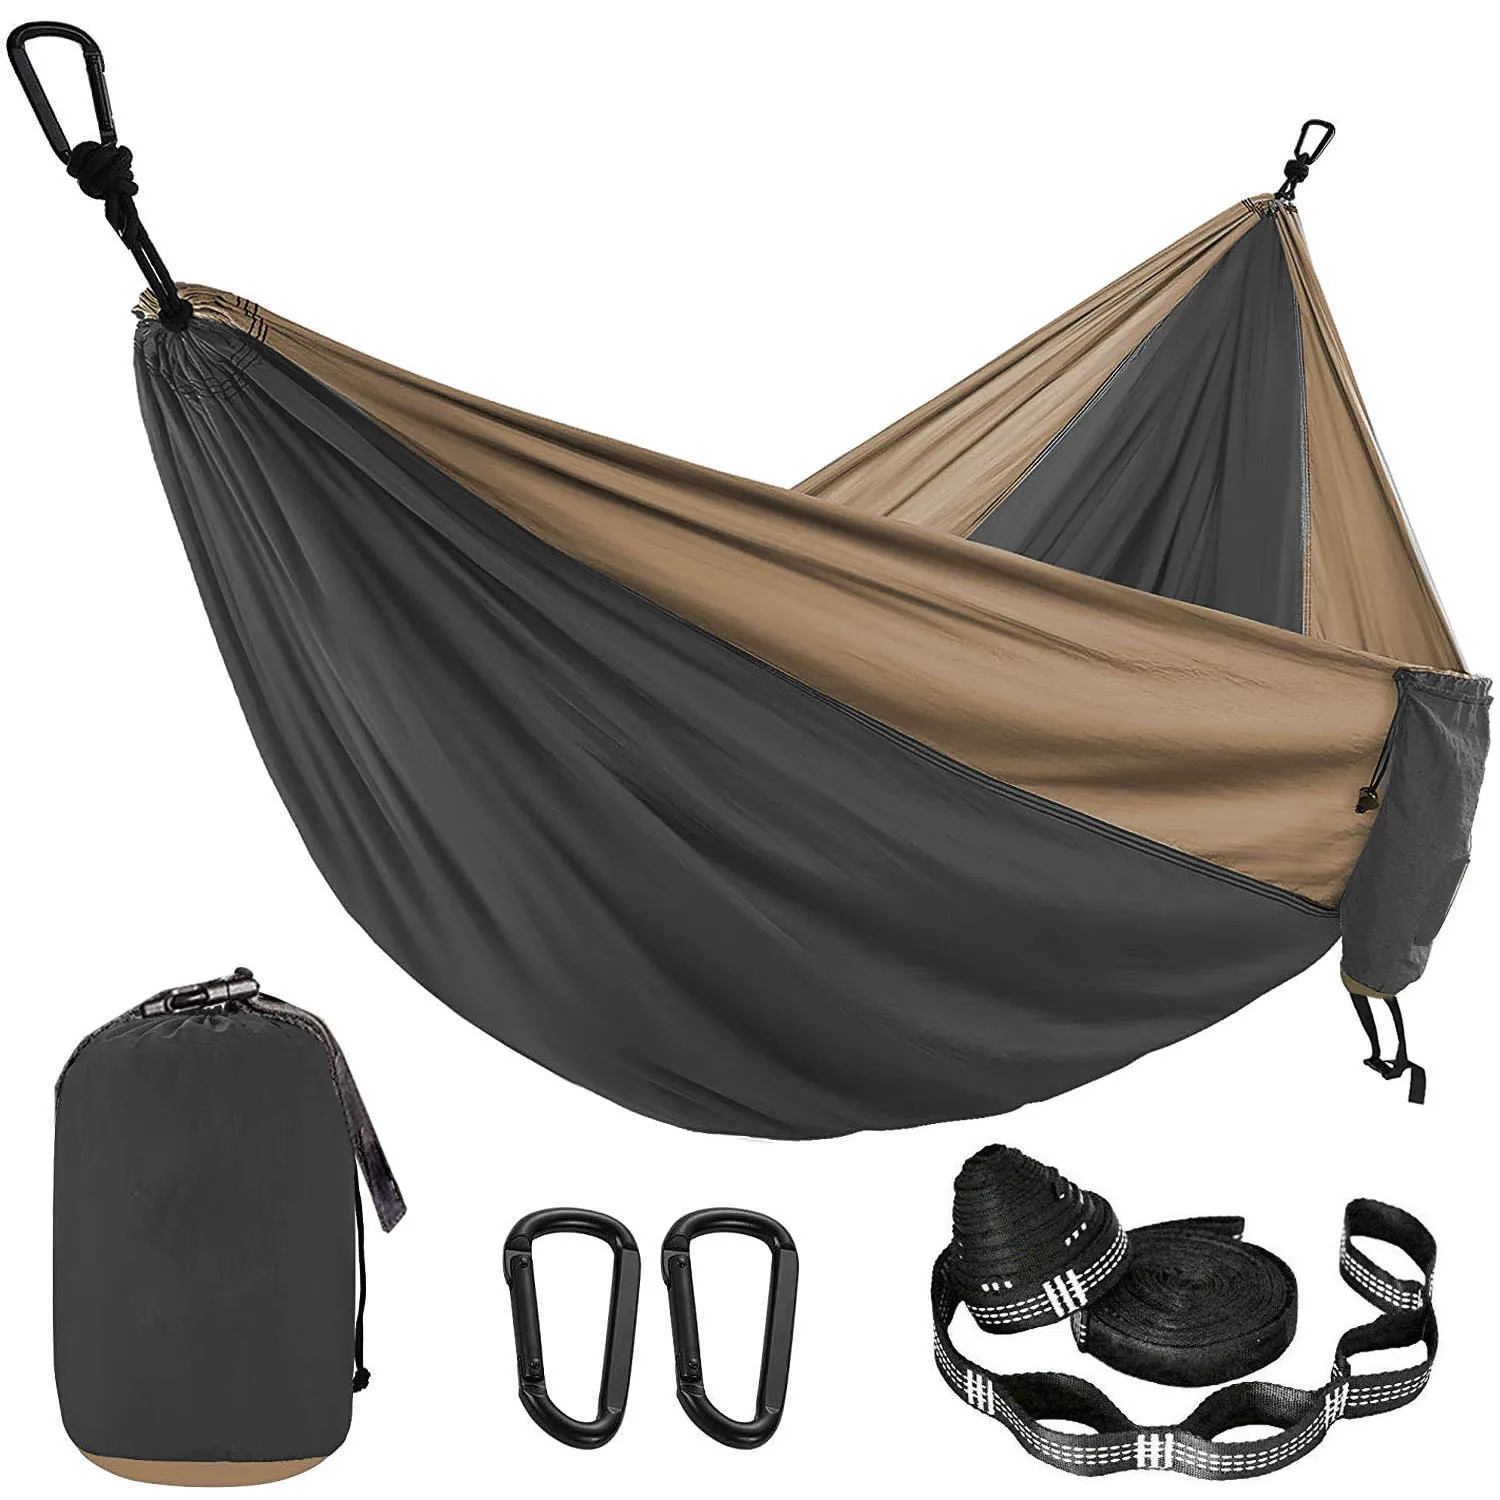 Hamaca de paracaídas de Color sólido con correas de hamaca y mosquetón negro para acampar, supervivencia, viaje para dos personas, muebles de exterior